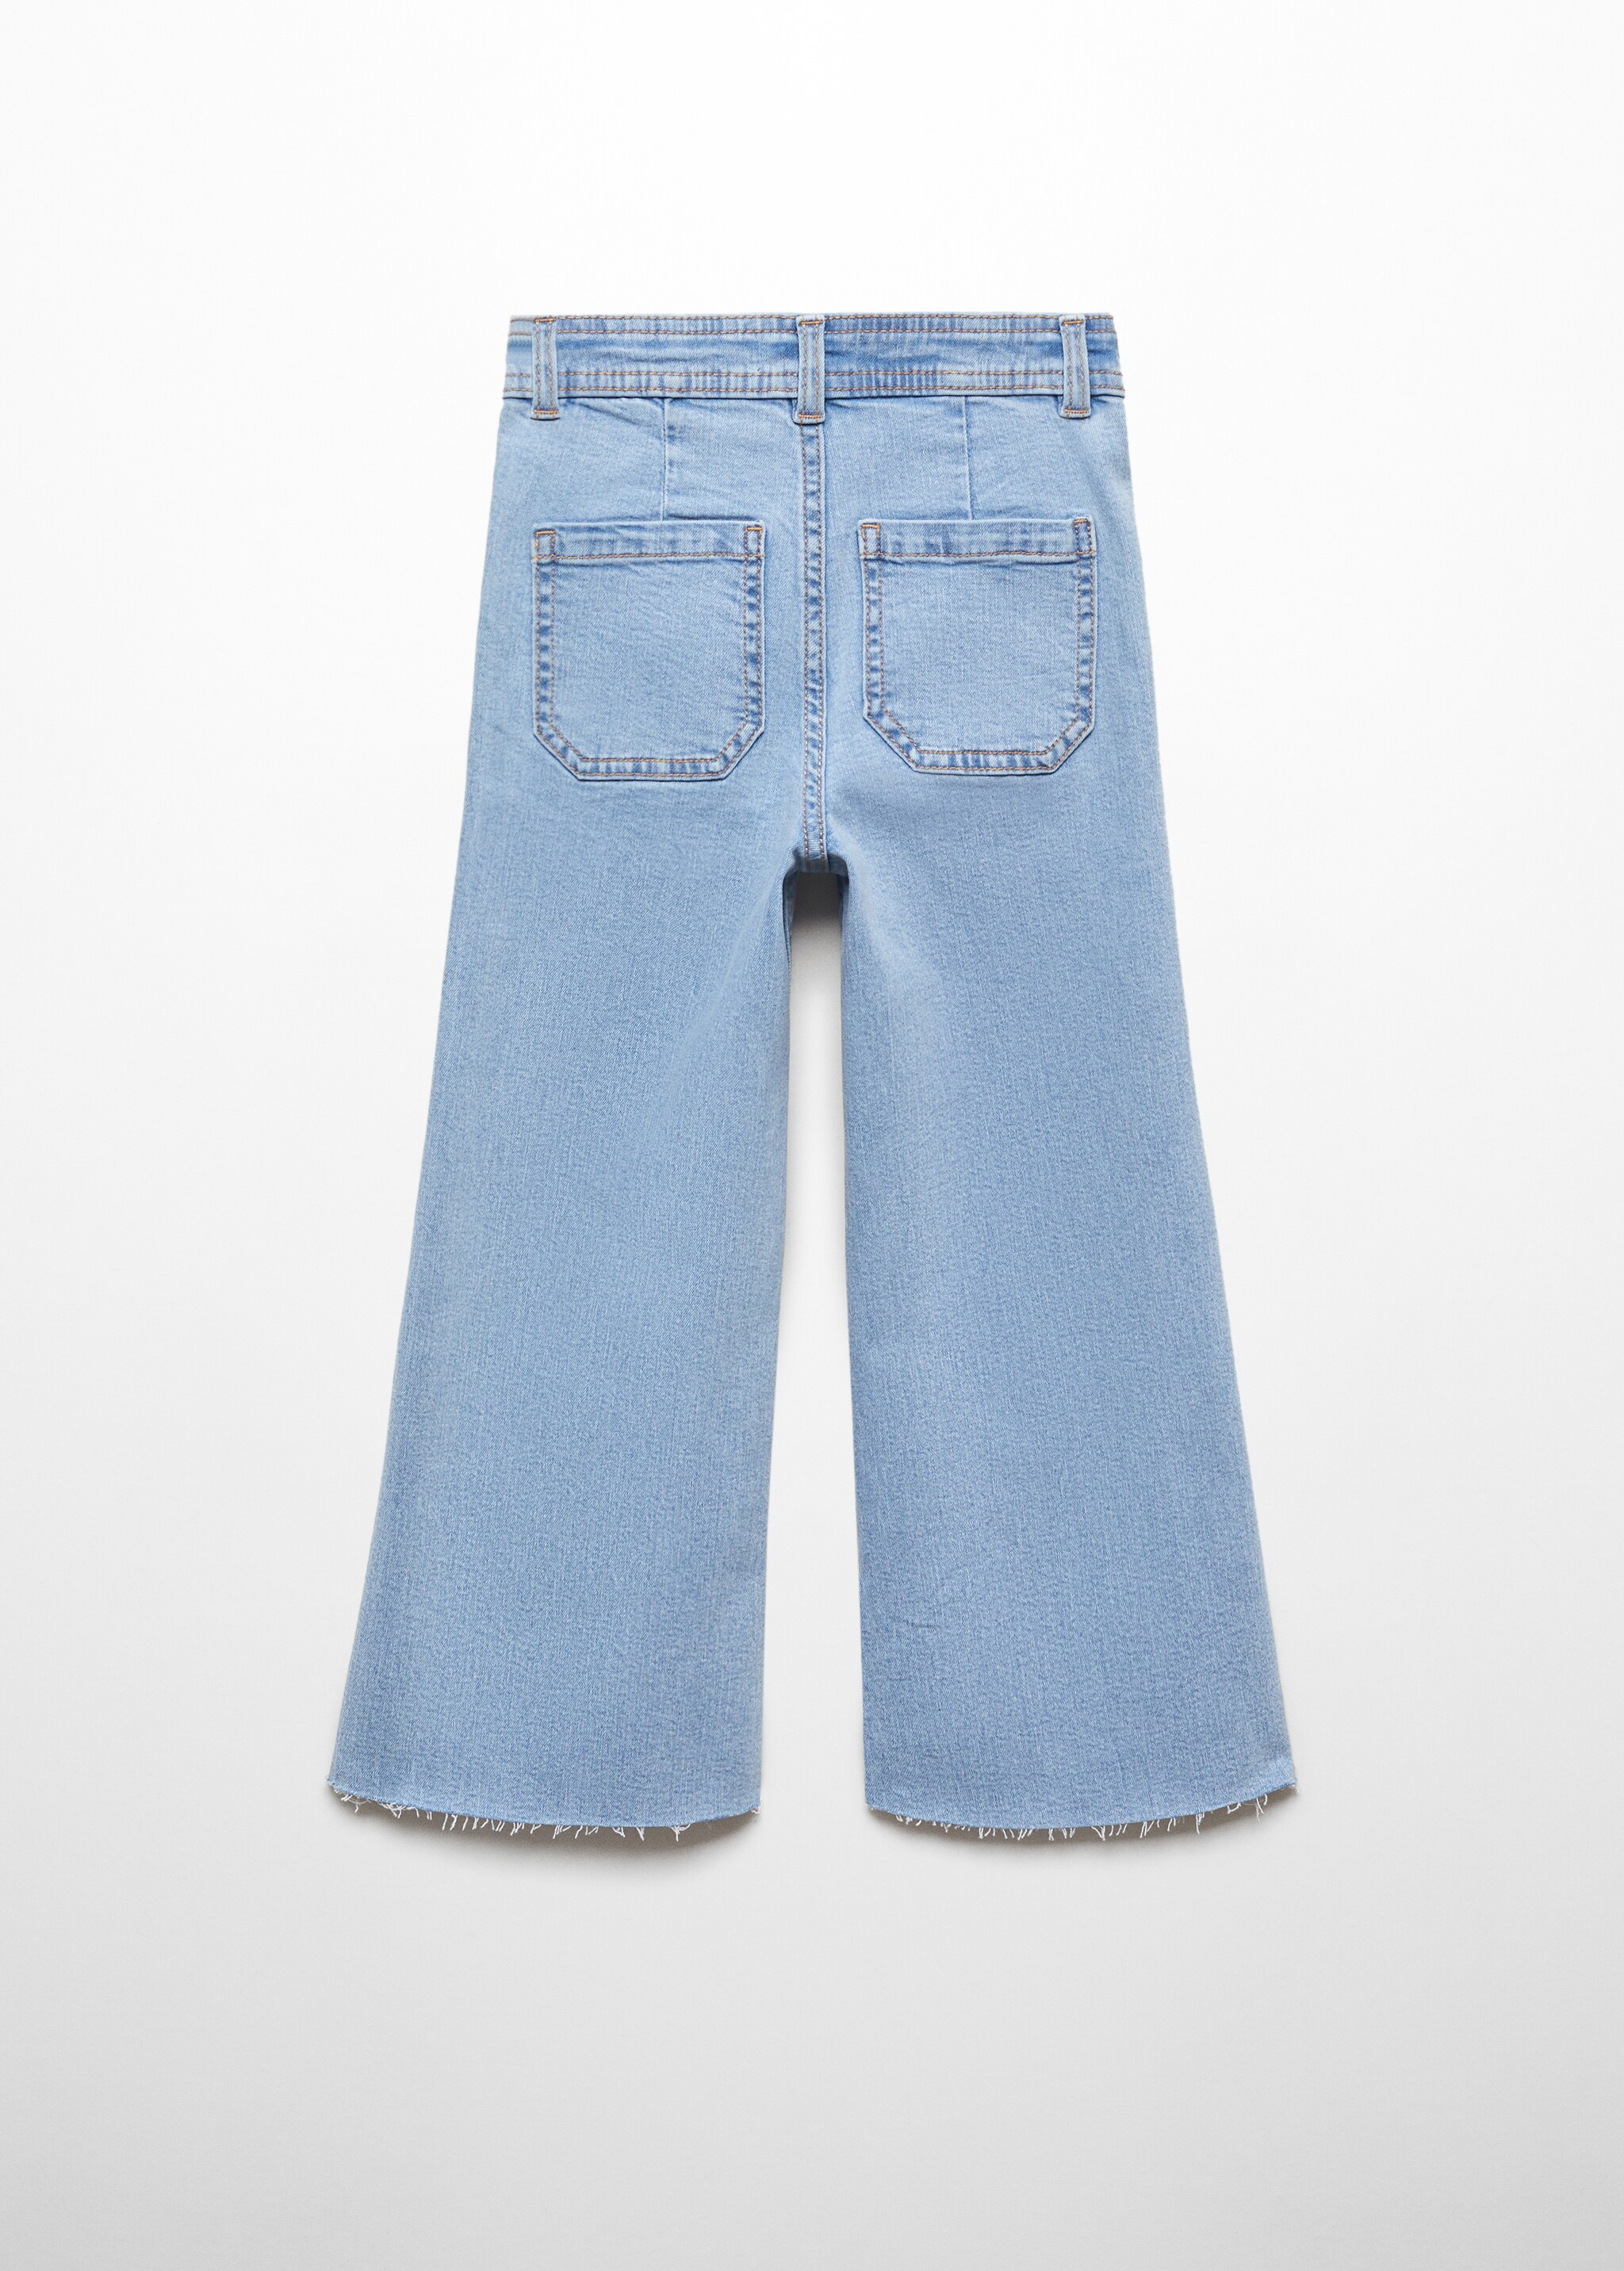 Culotte-Jeans mit hohem Bund - Rückseite des Artikels